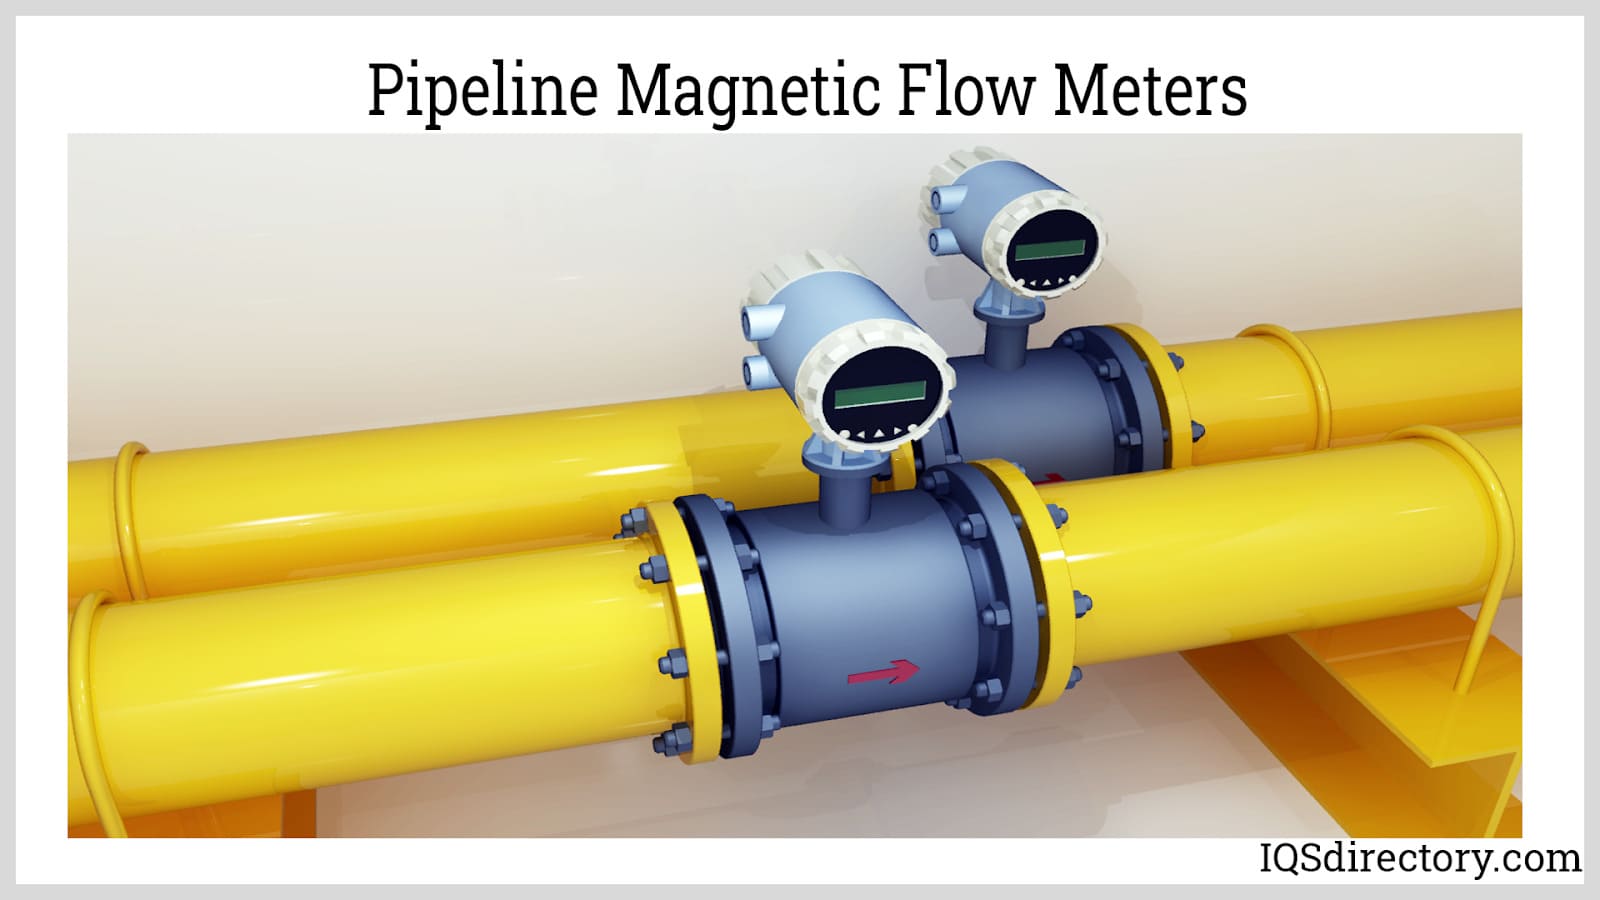 Pipeline Magnetic Flow Meters